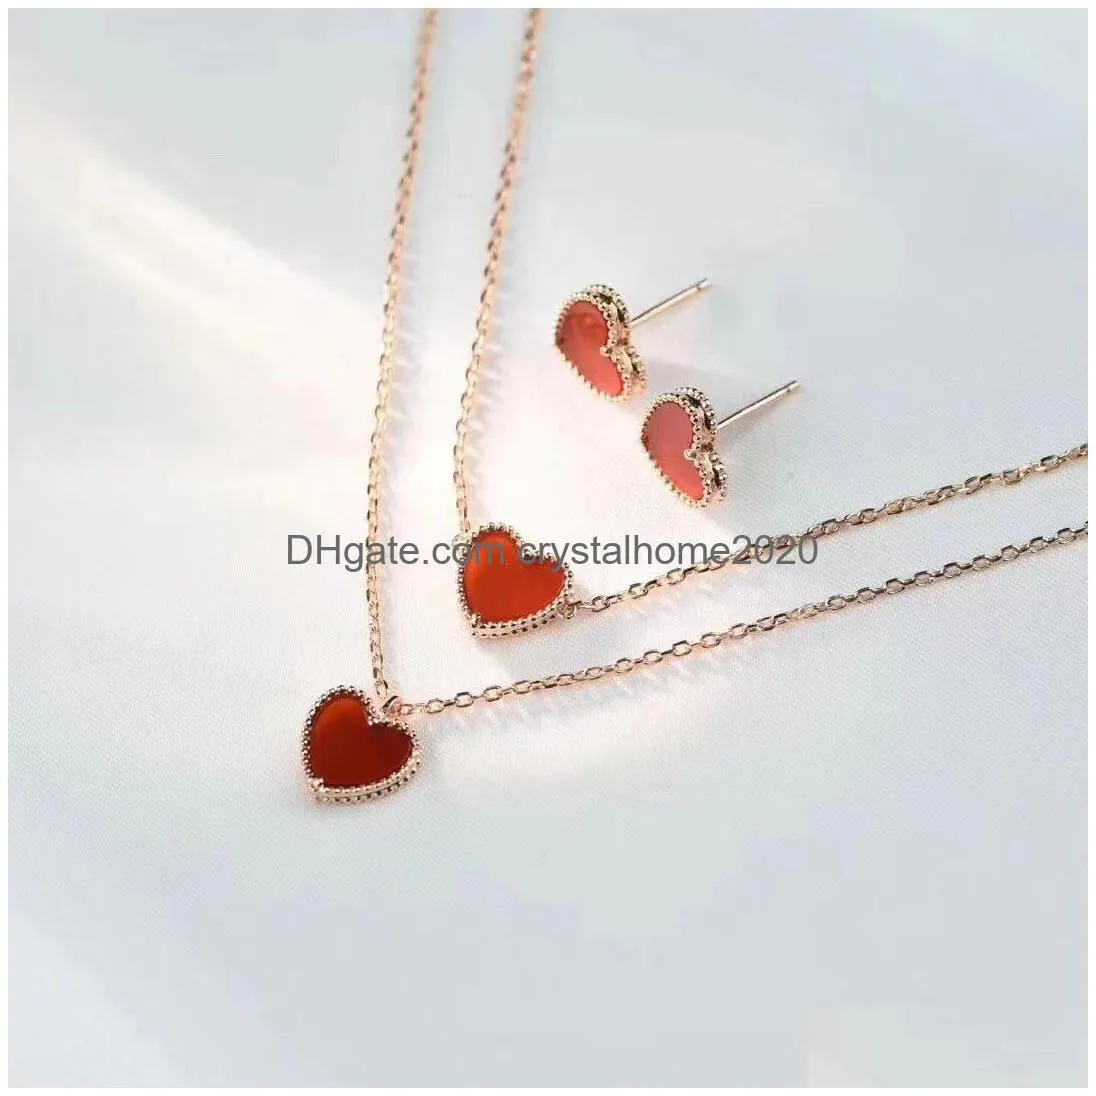 clover van brand stud earrings love red heart rose gold earings earring ear rings necklace bracelet bracelets jewelry